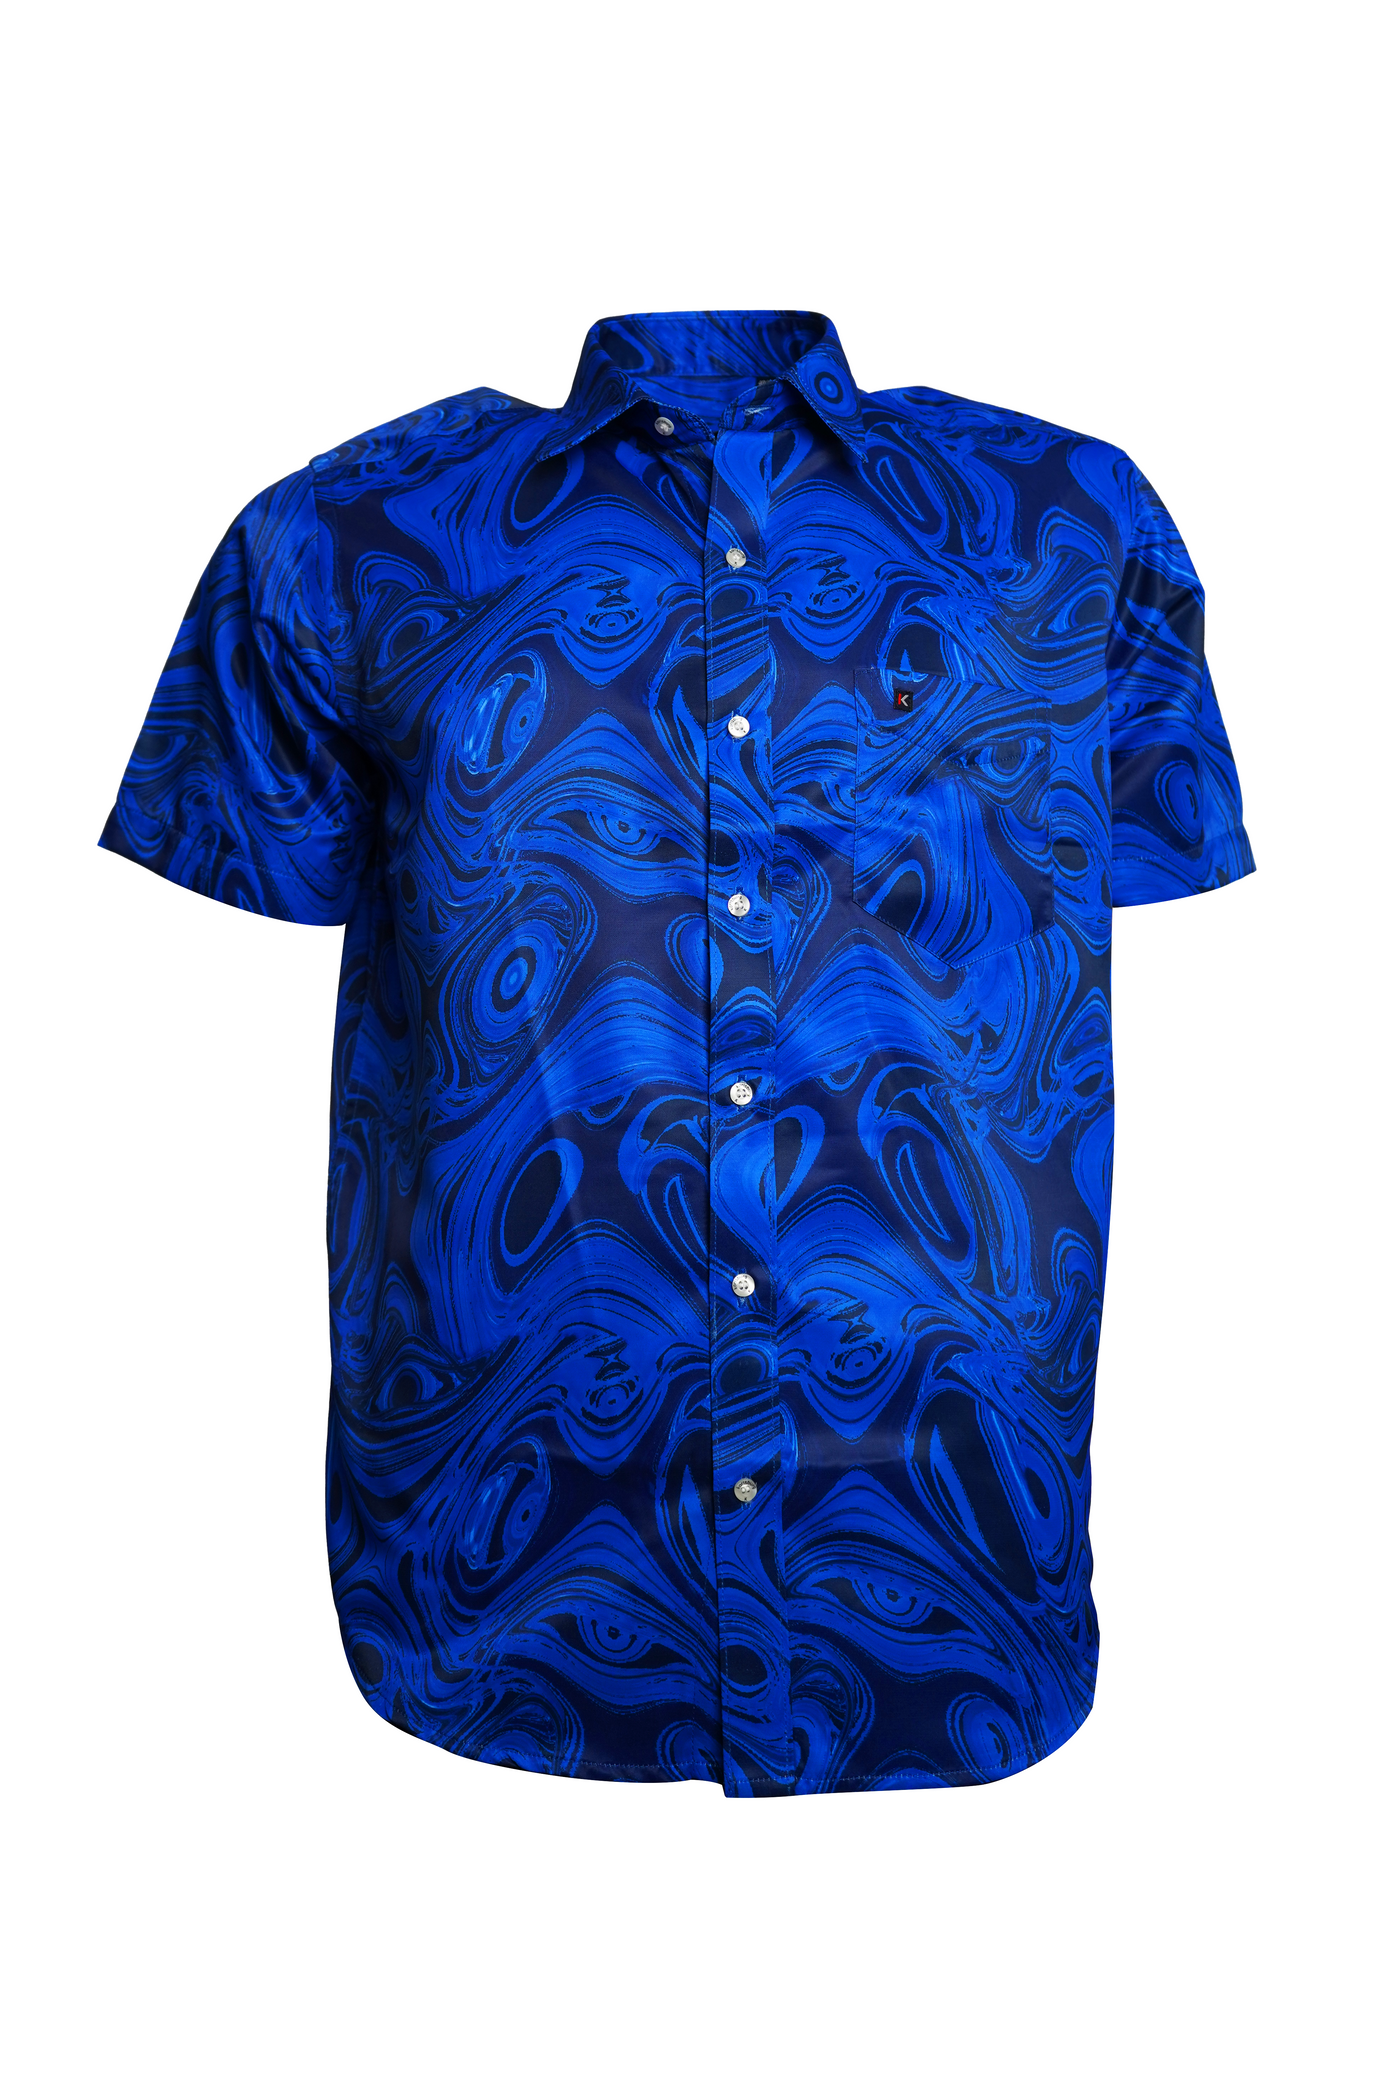 Men's Deep Blue Print Shirt